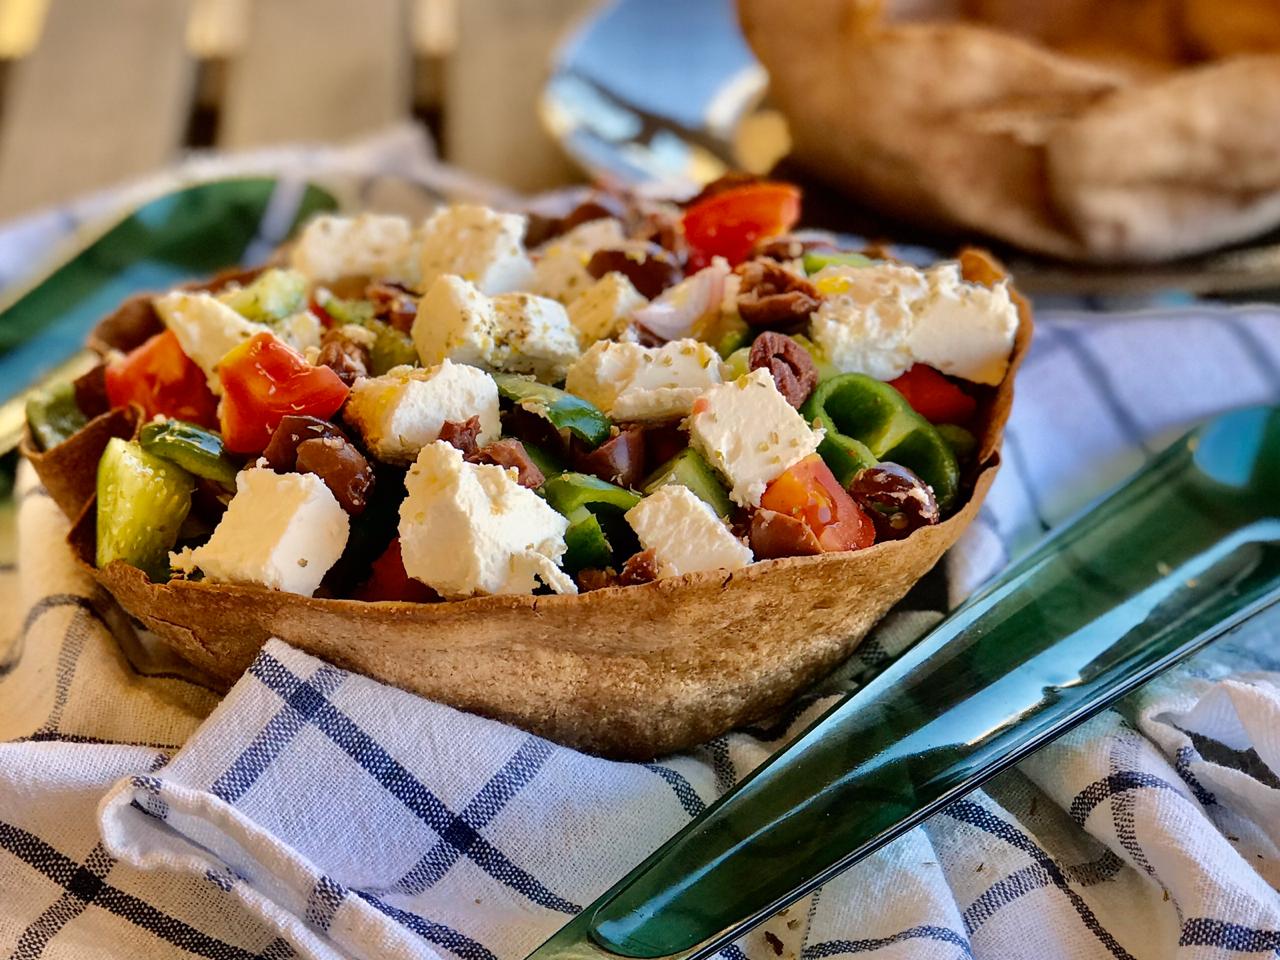 Greek salad in a tortilla bowl